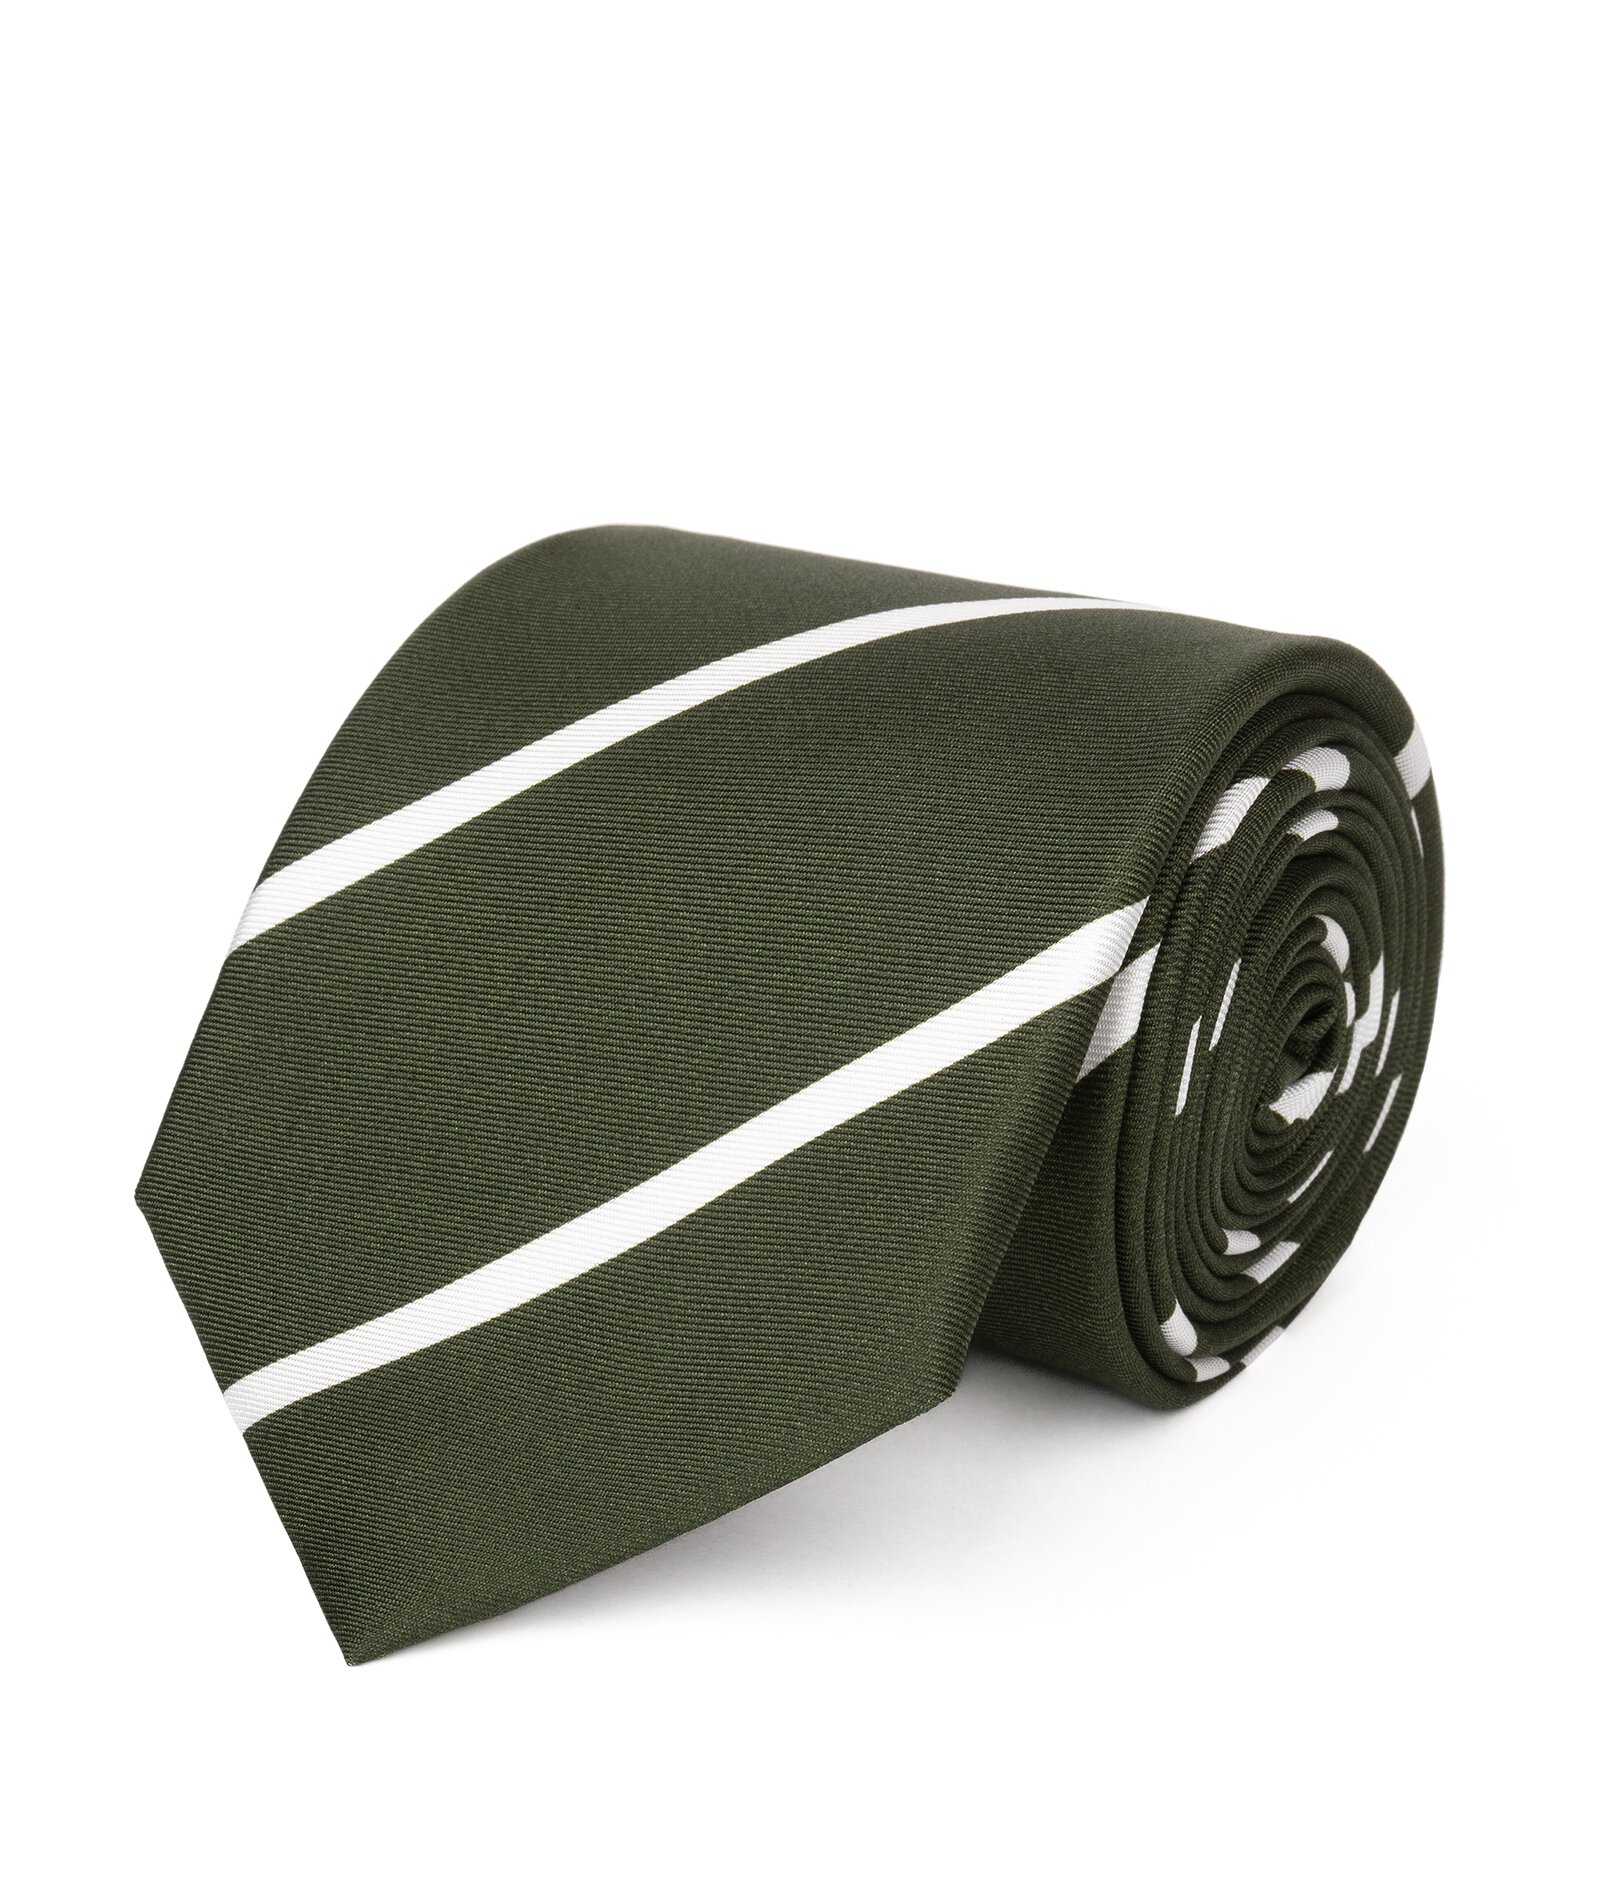 Image of Cravatta su misura, Lanieri, Verde e Bianco Regimental in twill di Seta, Quattro Stagioni | Lanieri